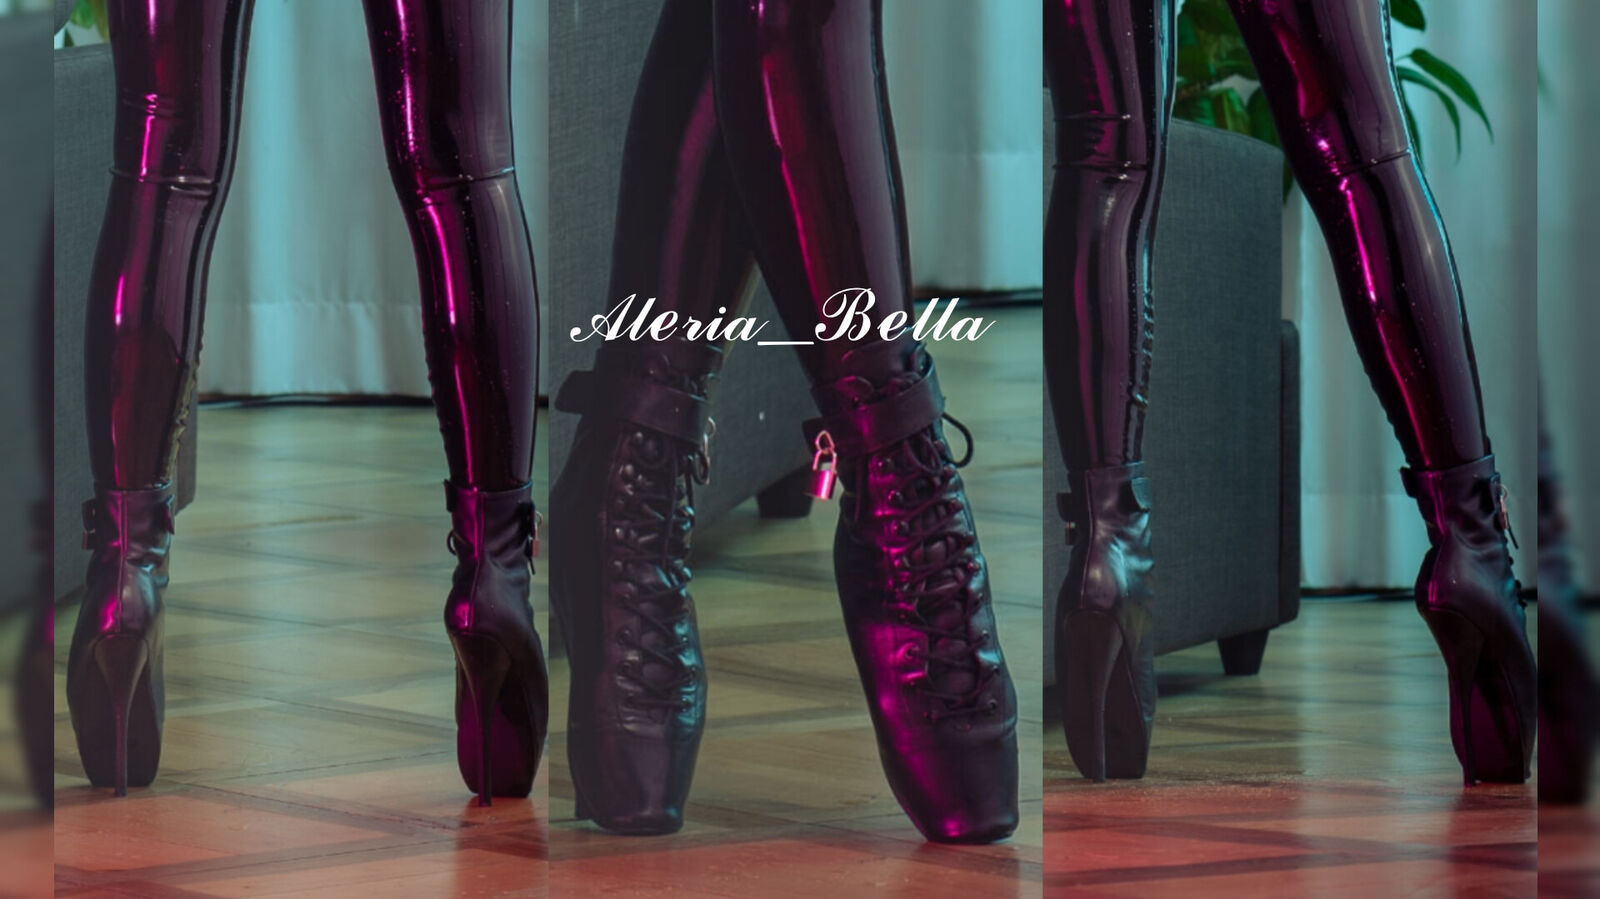 See Aleria_Bella profile